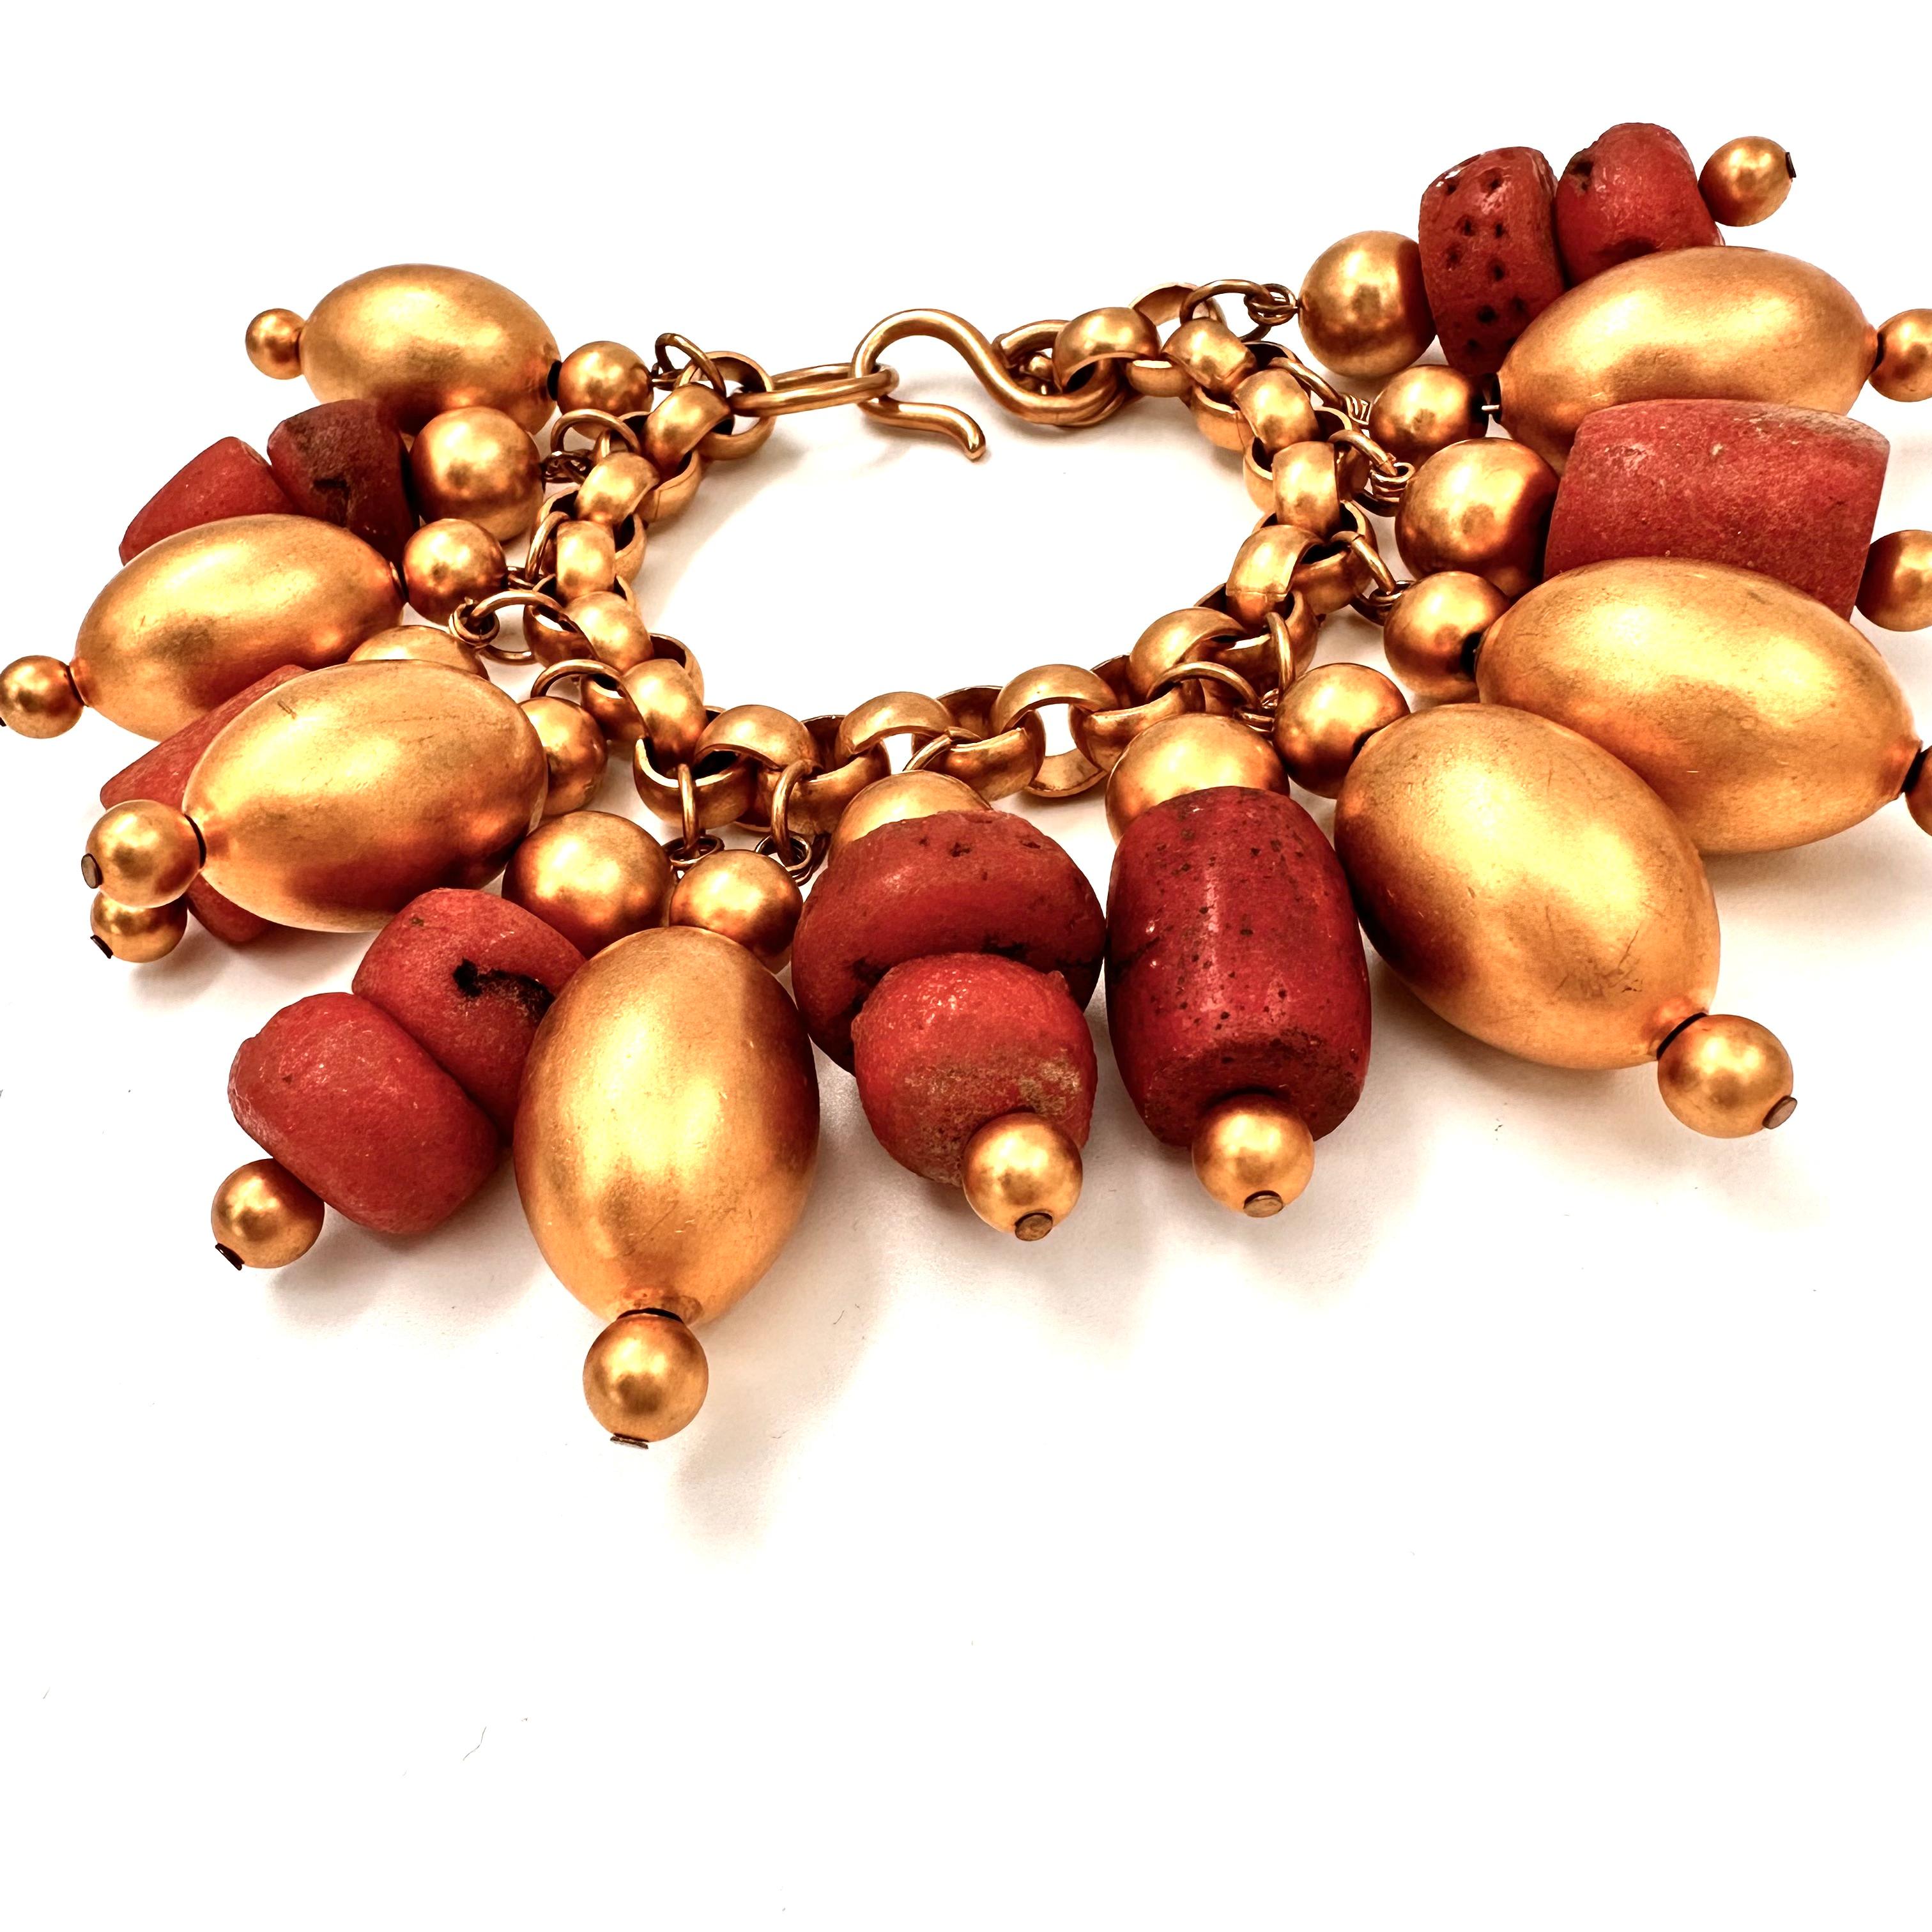 Robert Lee Morris Runway Collection Large Gold Charm Bracelet für Donna Karan, für eine Resort-Show im Jahr 1987. Die übergroßen vergoldeten Perlen sind mit runden roten afrikanischen Glasperlen durchsetzt. Jede Glasperle ist ein Unikat und